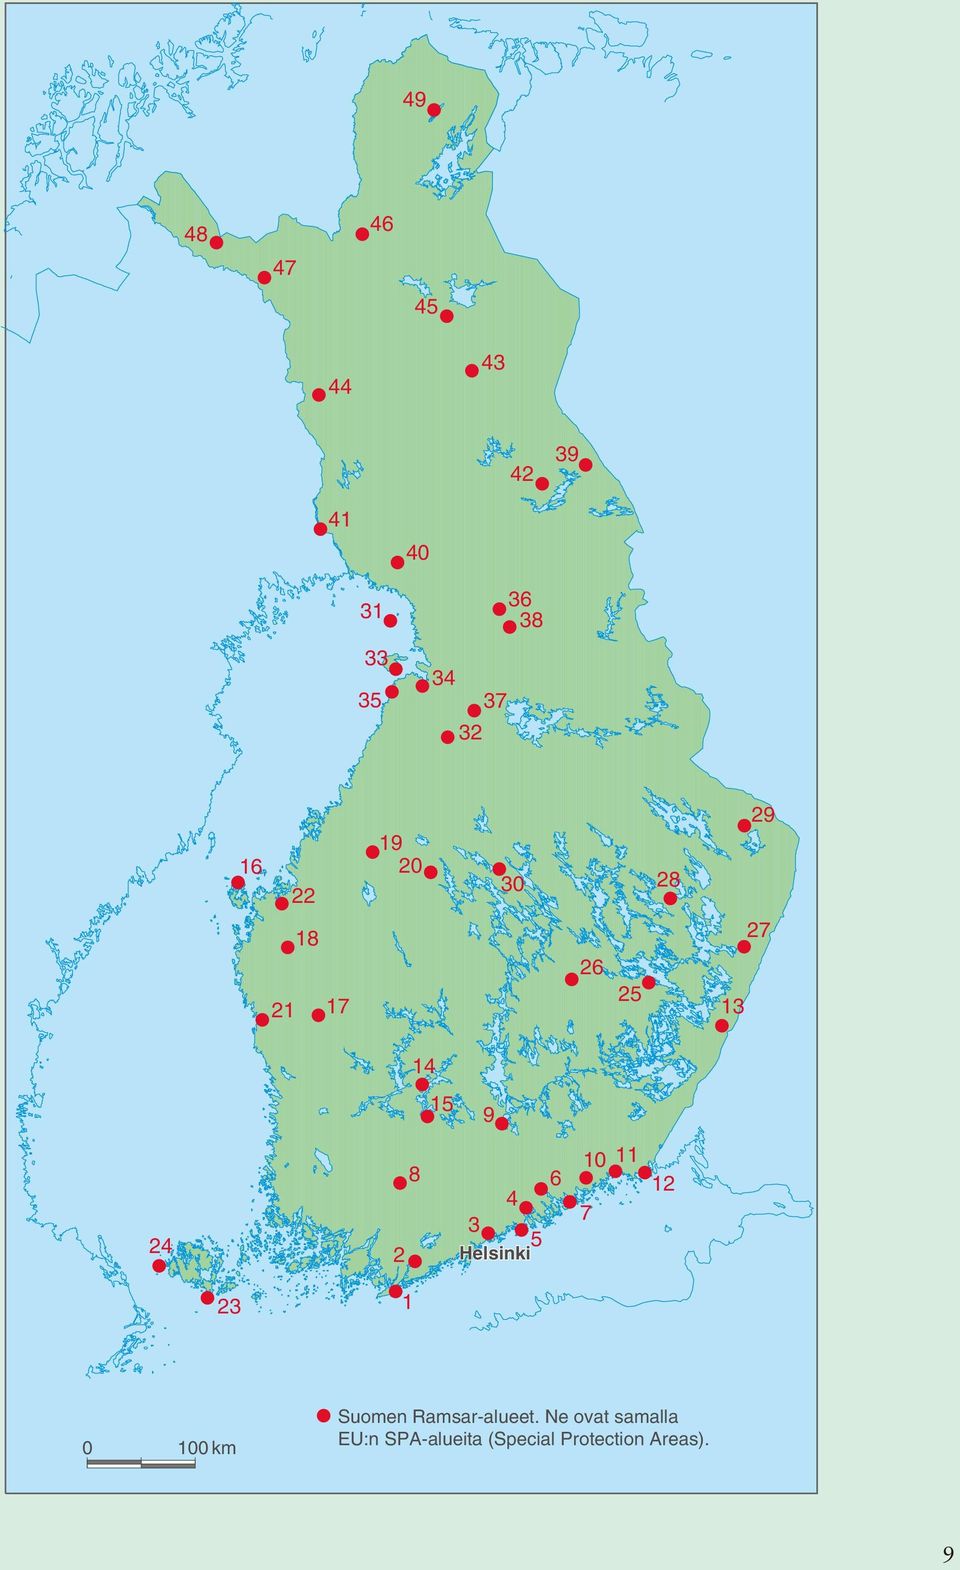 5 Helsinki 10 7 11 12 23 1 0 100 km Suomen Ramsar-alueet.